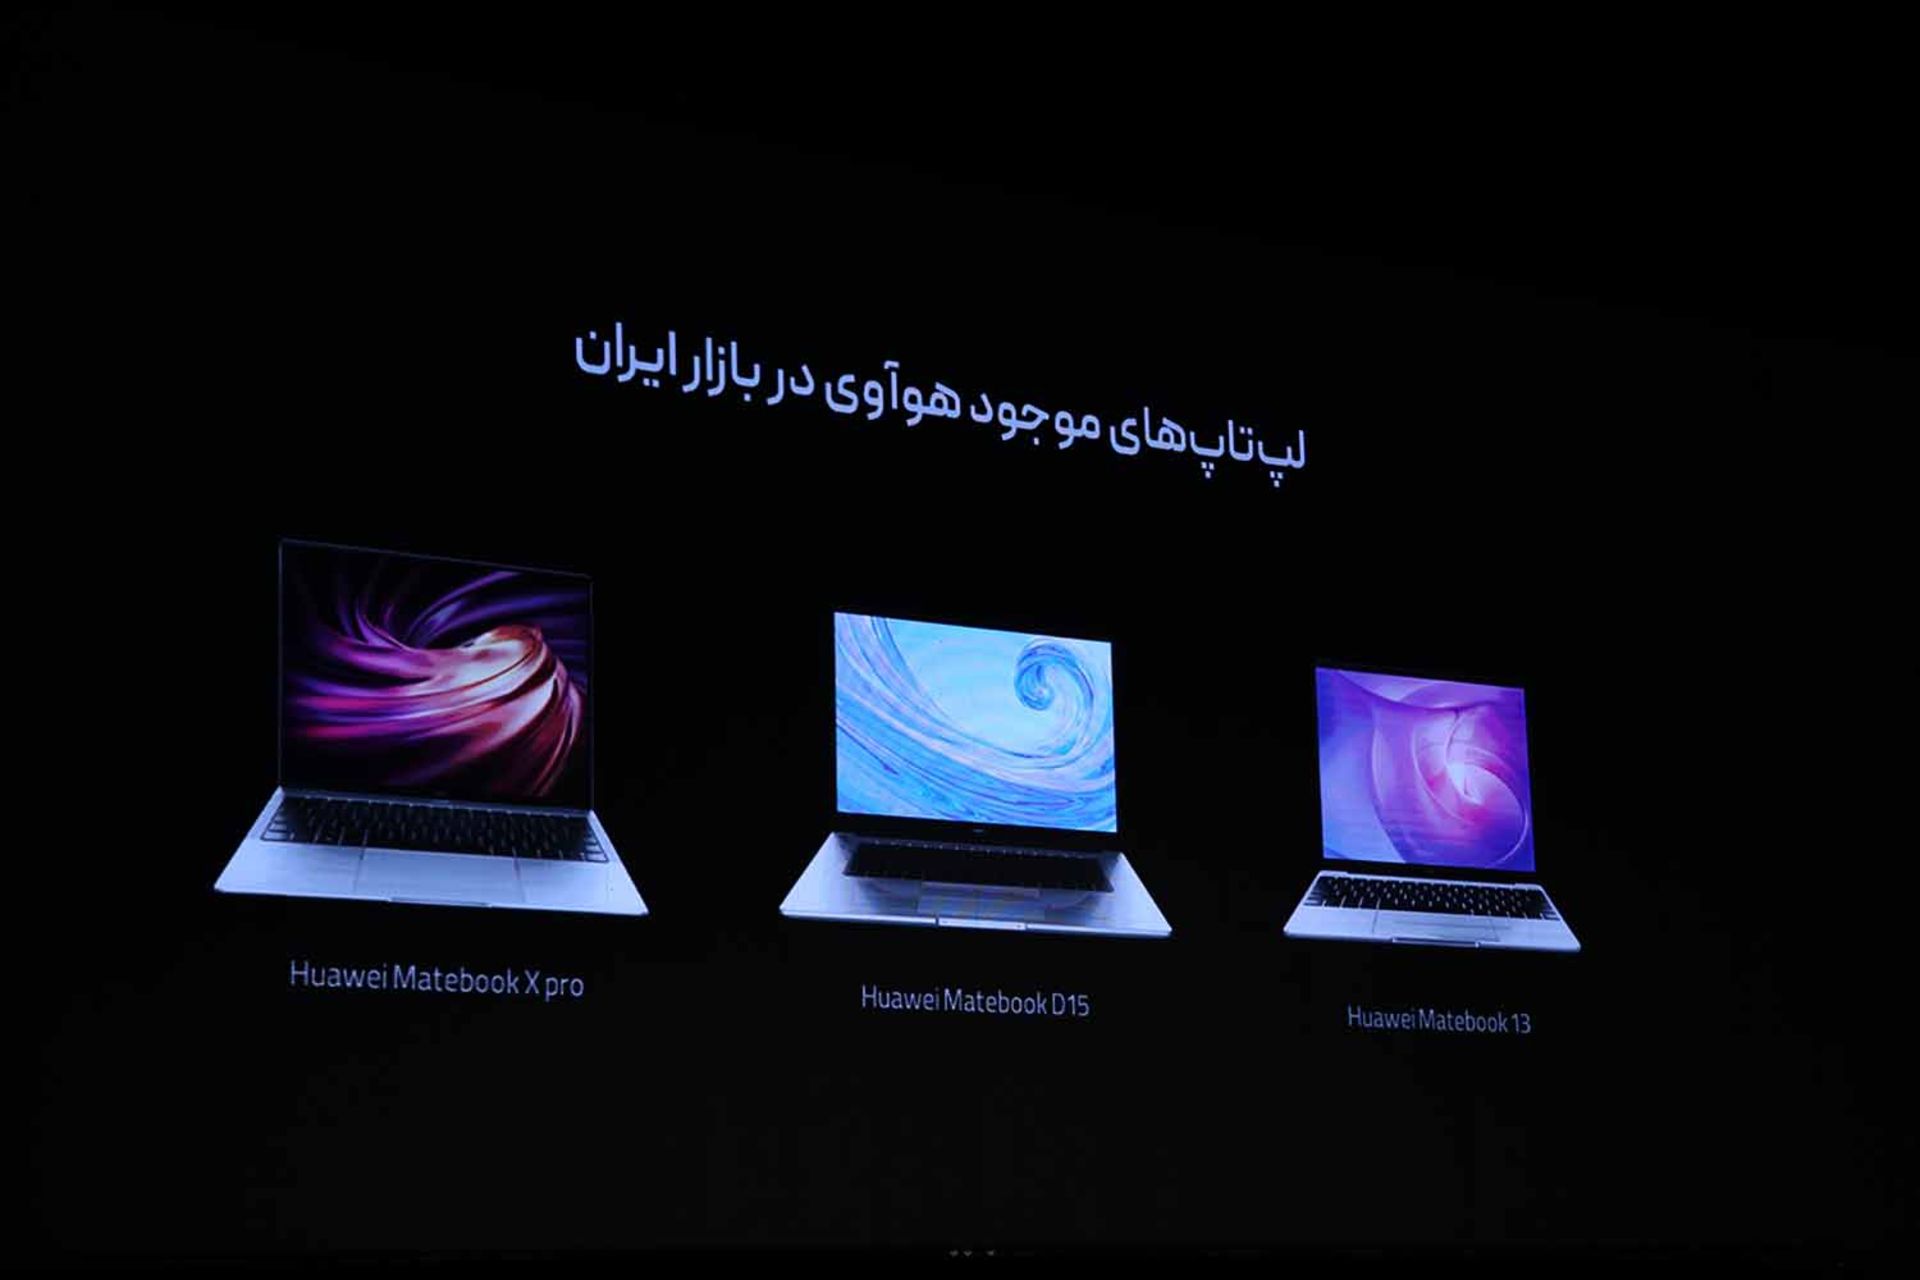 لپ تاپ های هواوی در بازار ایران شامل میت بوک D15 و میت بوک 13 و میت بوک ایکس پرو